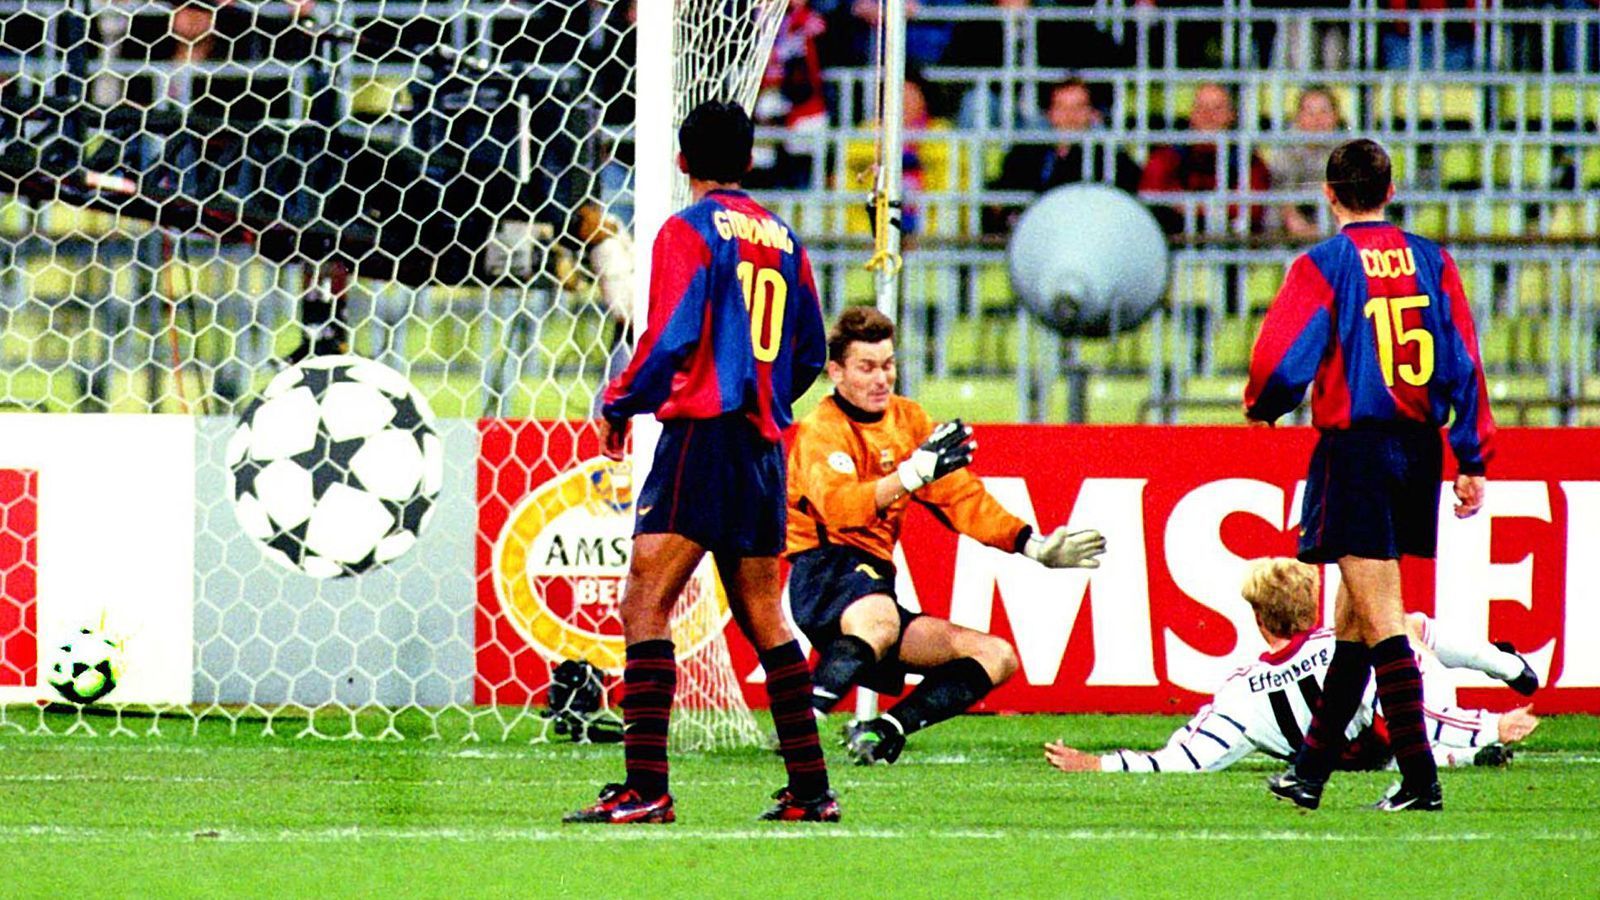 
                <strong>FC Bayern - FC Barcelona (Champions League 1998/99)</strong><br>
                Im Herbst 1998 trafen sich Bayern und Barca erneut im Europapokal, dieses Mal in der Gruppenphase der Champions League. Am 21. Oktober kam es zum Hinspiel im Olympiastadion und Stefan Effenberg (u.) entschied diese Begegnung durch seinen Treffer zum 1:0 in der 45. Minute. Die spätere Barca-Ikone Xavi stand damals als 18-Jähriger bei den Katalanen in der Startelf, an der Seite von großen Namen wie Luis Figo, Luis Enrique oder Rivaldo. 
              